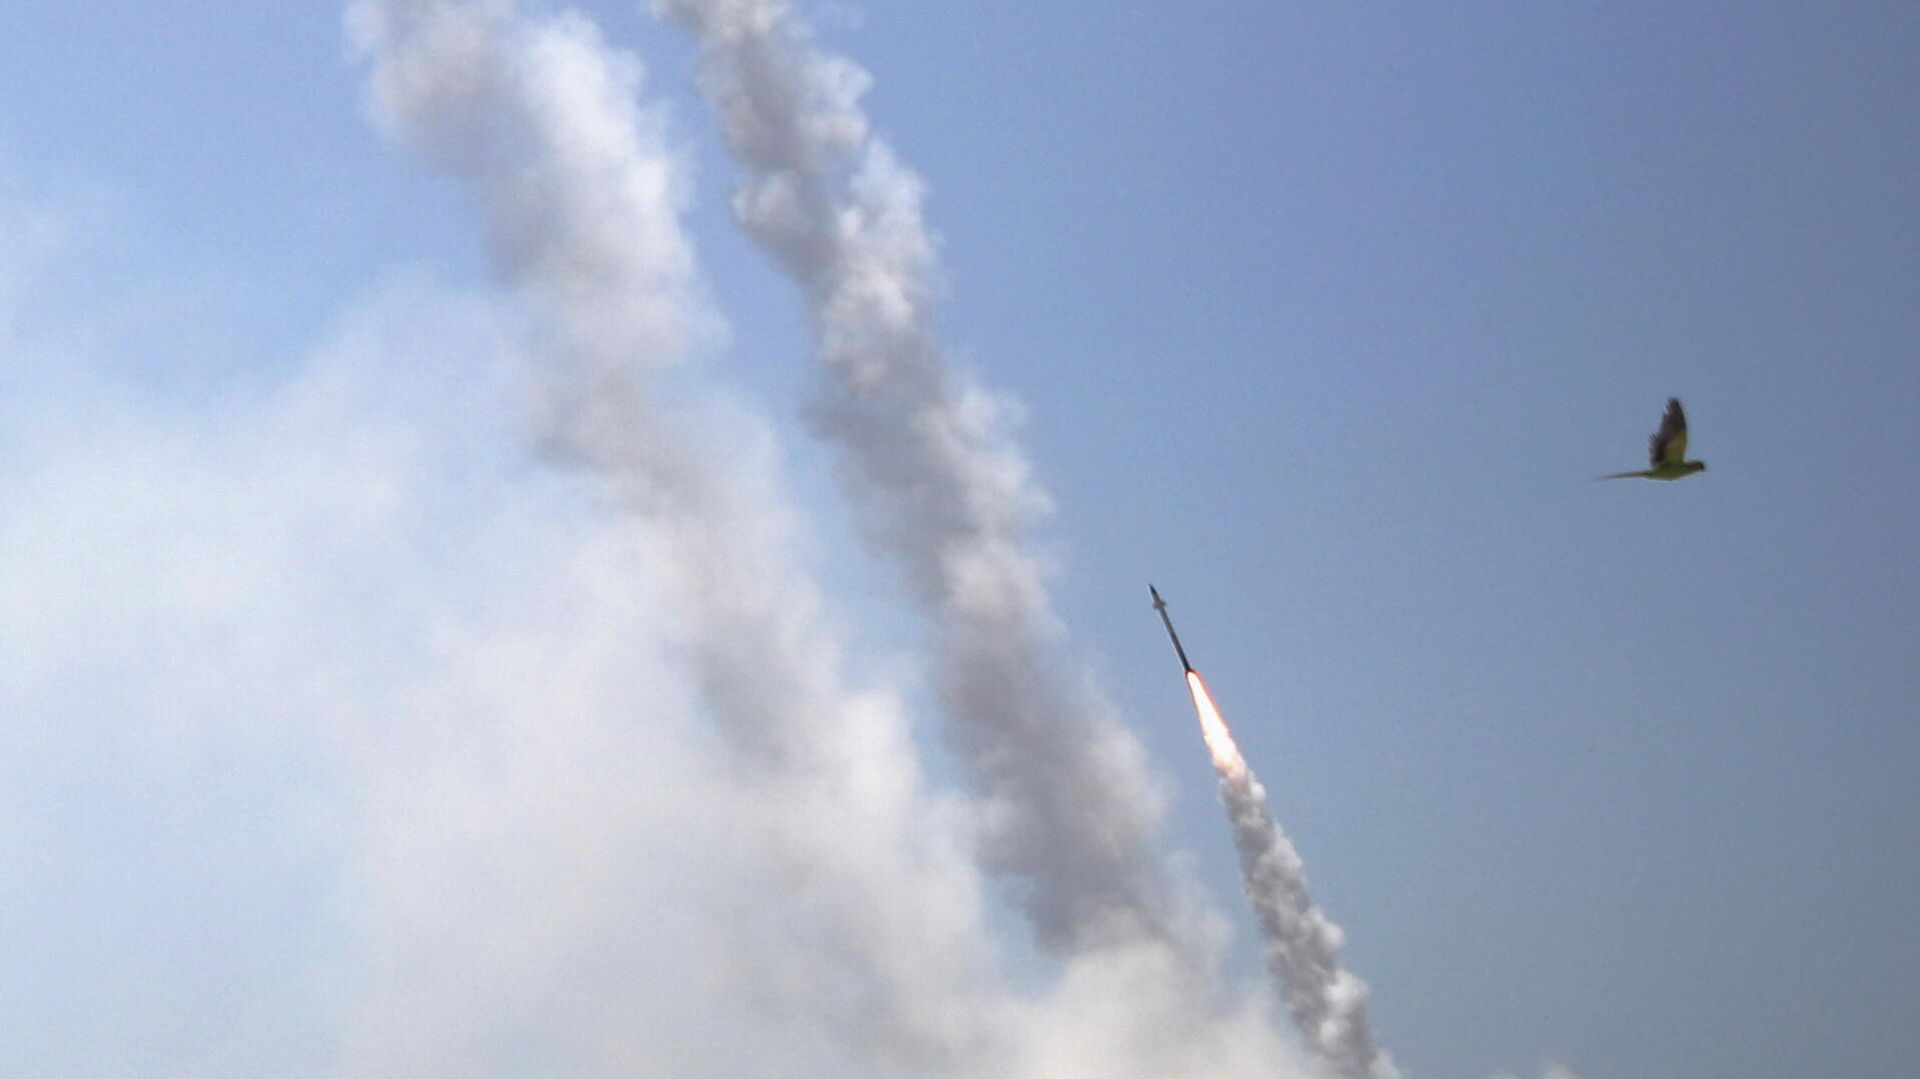 Противоракетная система Железный купол перехватывает ракеты, запущенные из сектора Газа в направлении Израиля - РИА Новости, 1920, 13.05.2021